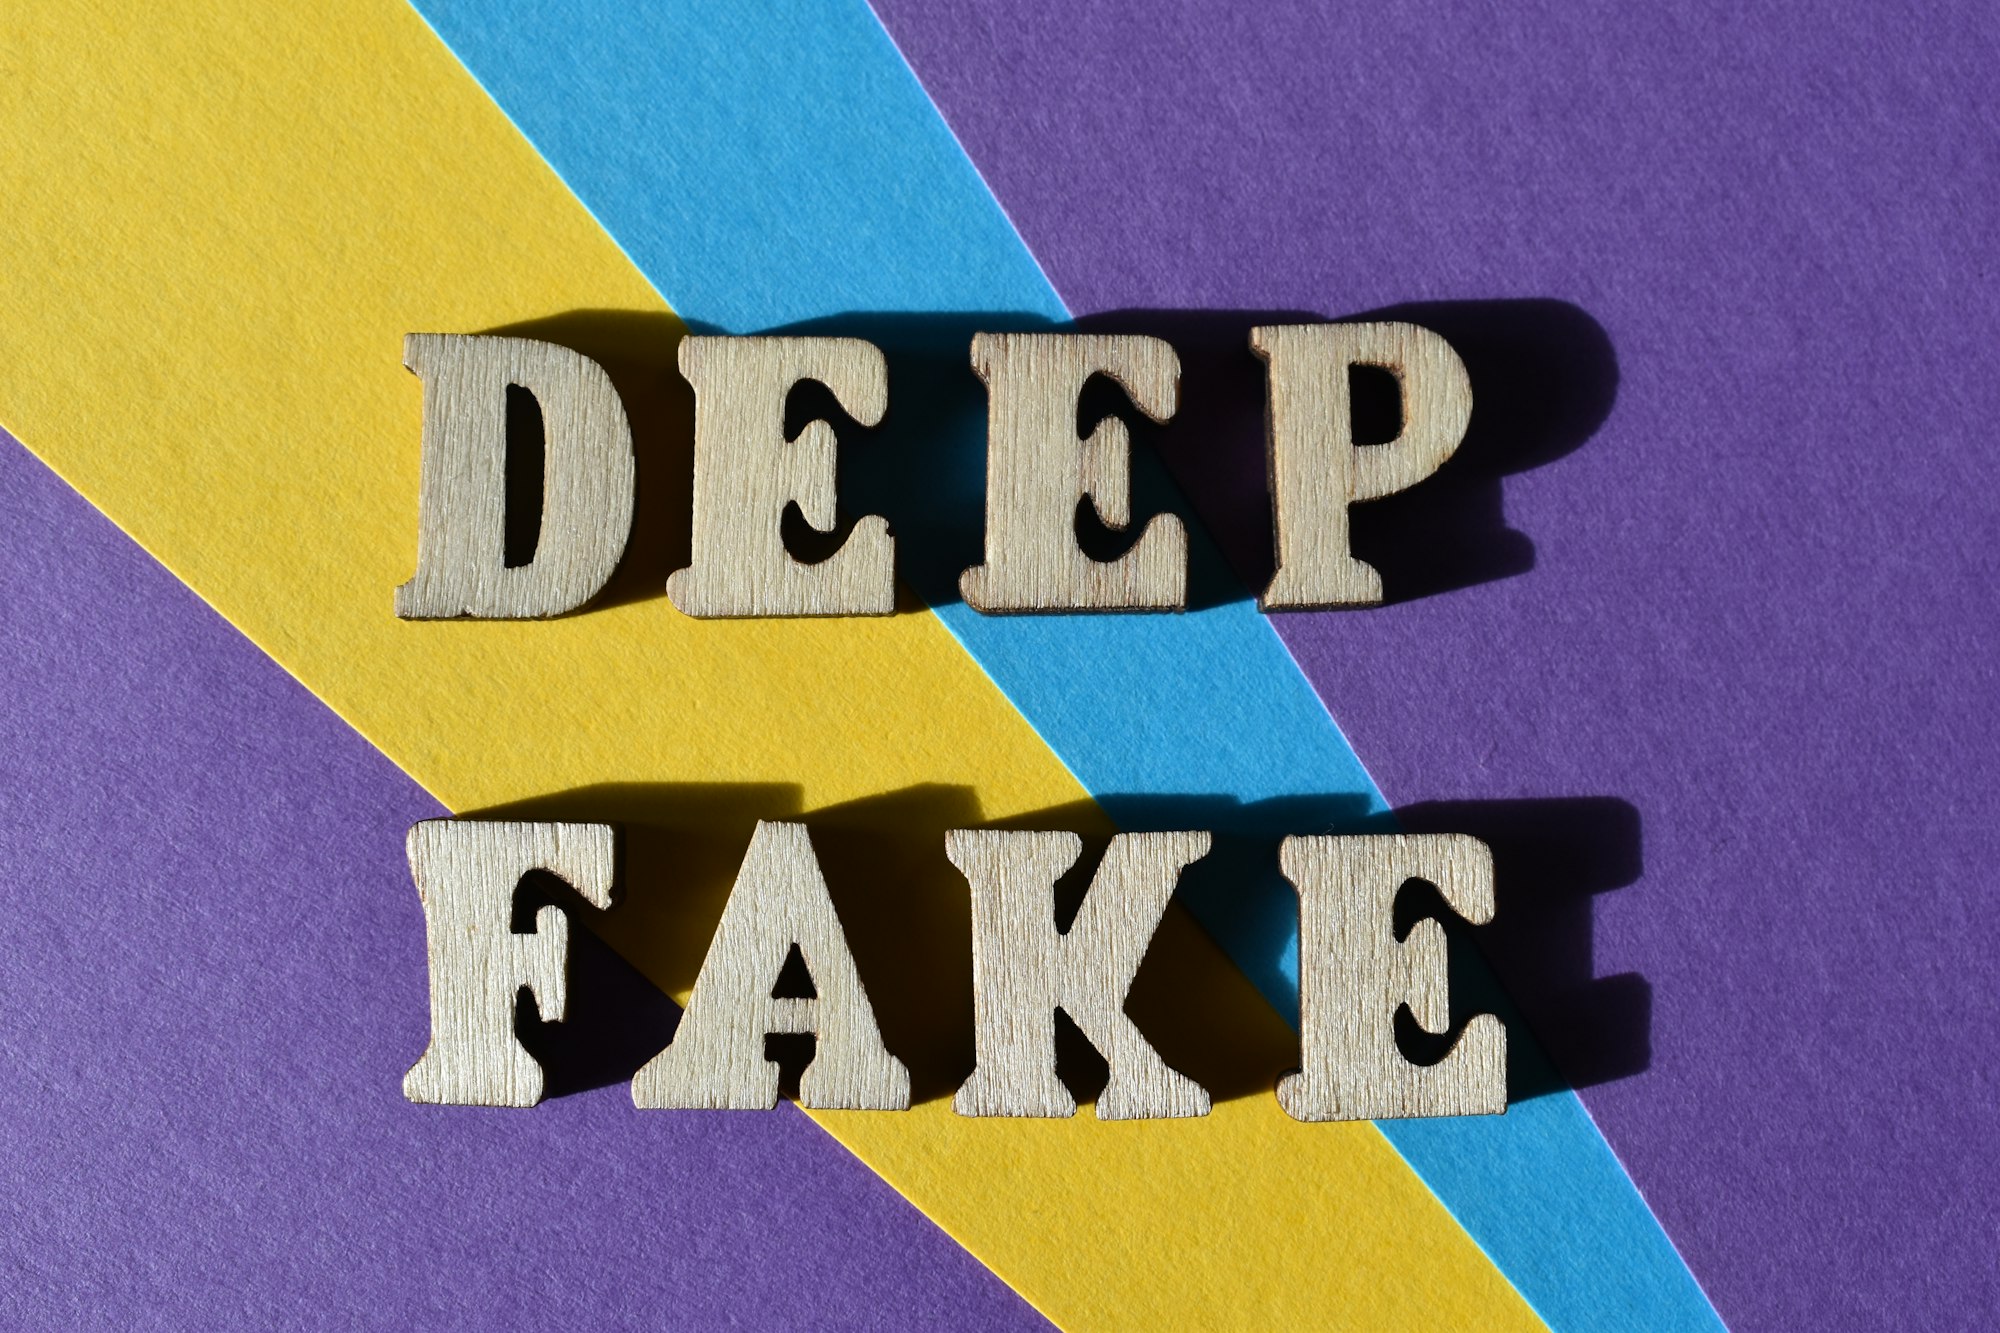 Qu'est-ce qu'un deepfake ? Tout ce que vous devez savoir sur cette technologie controversée de l'IA